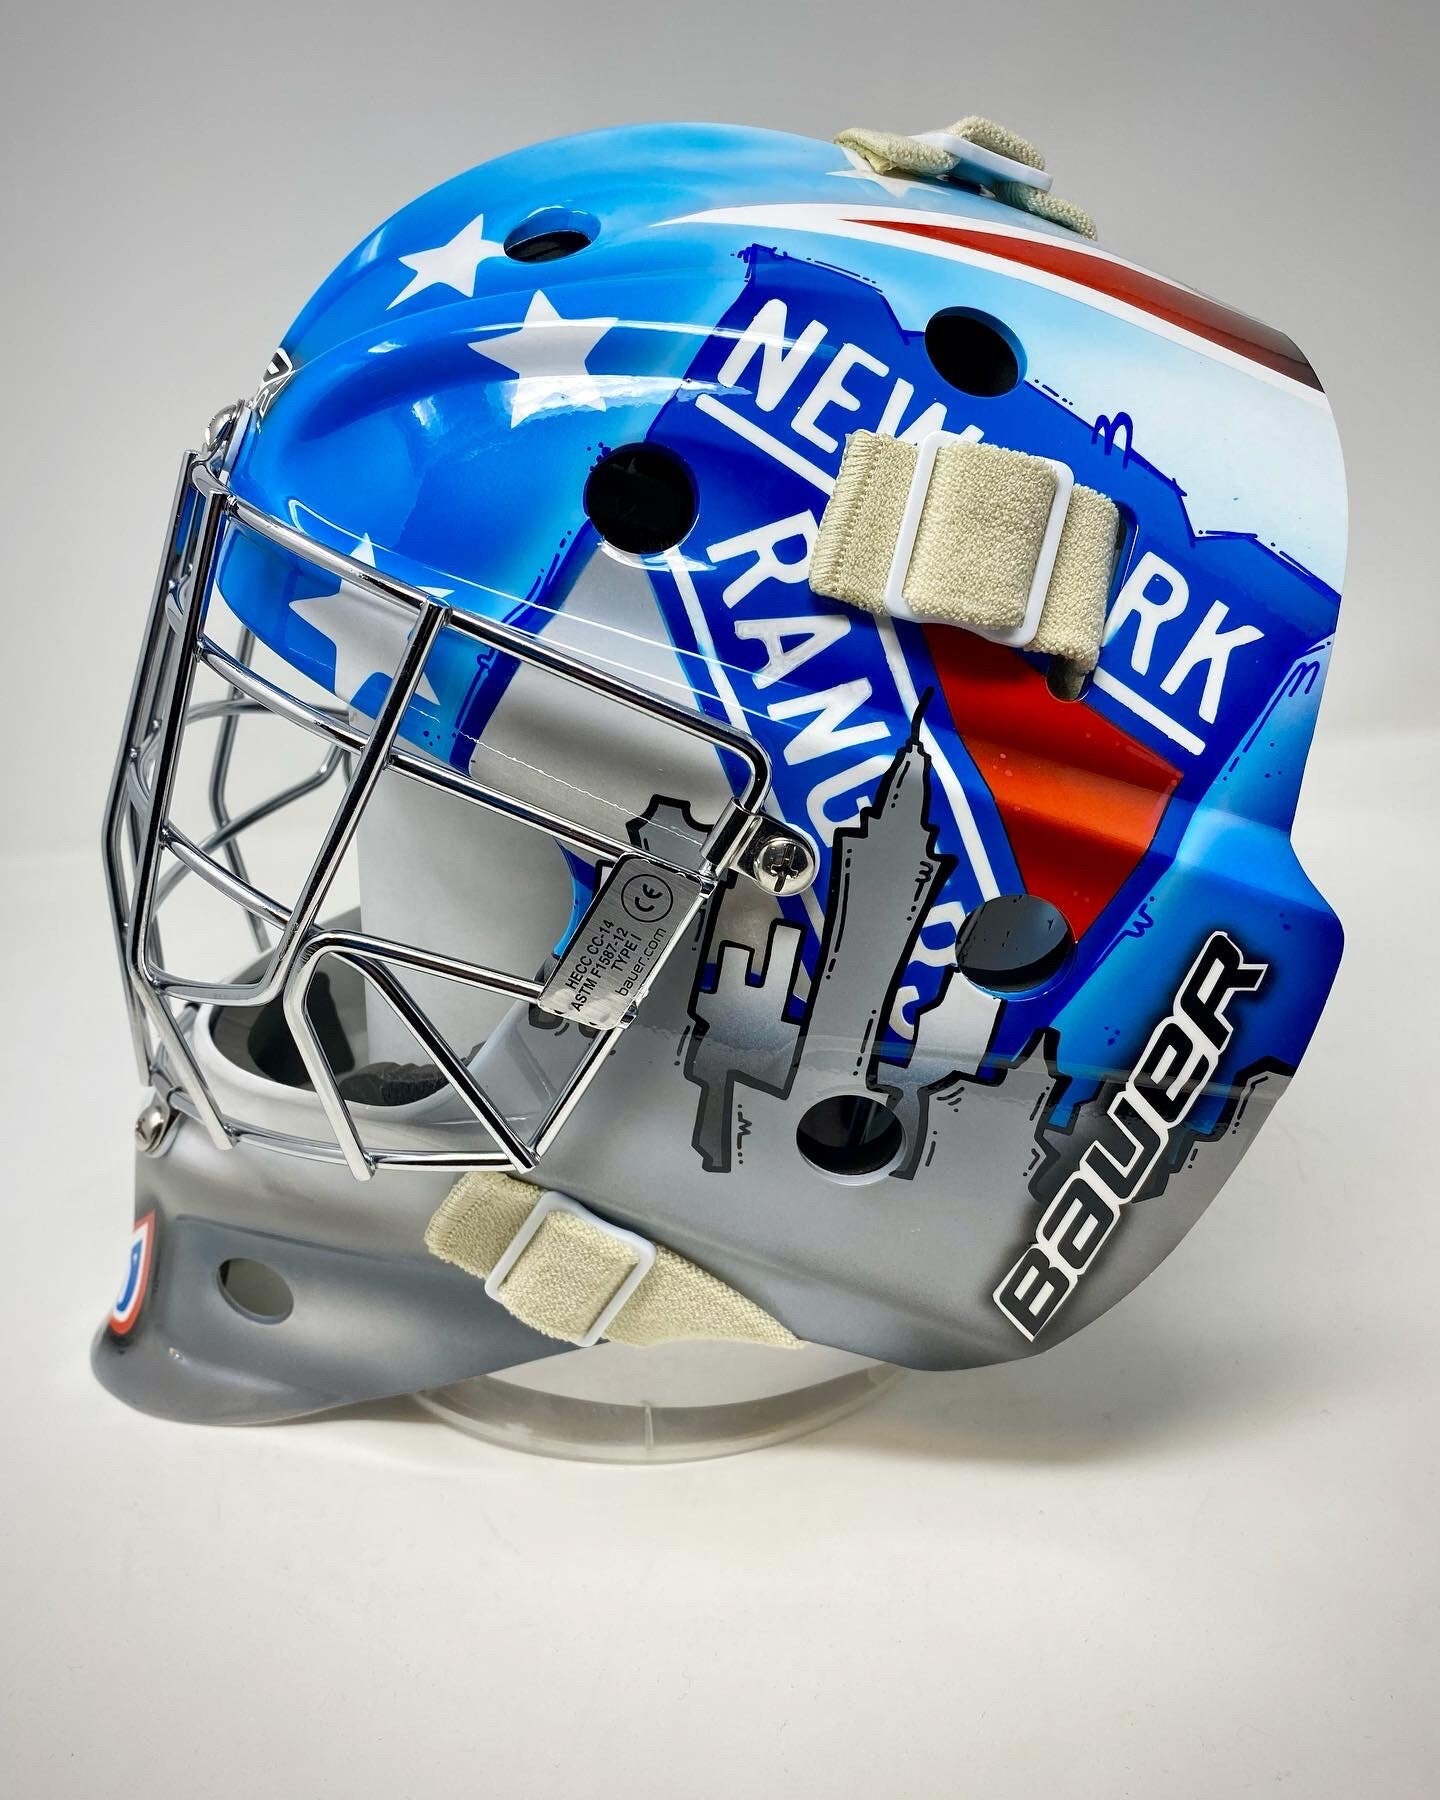 Custom-used goalie mask signed by New York Rangers #40 Alexandar